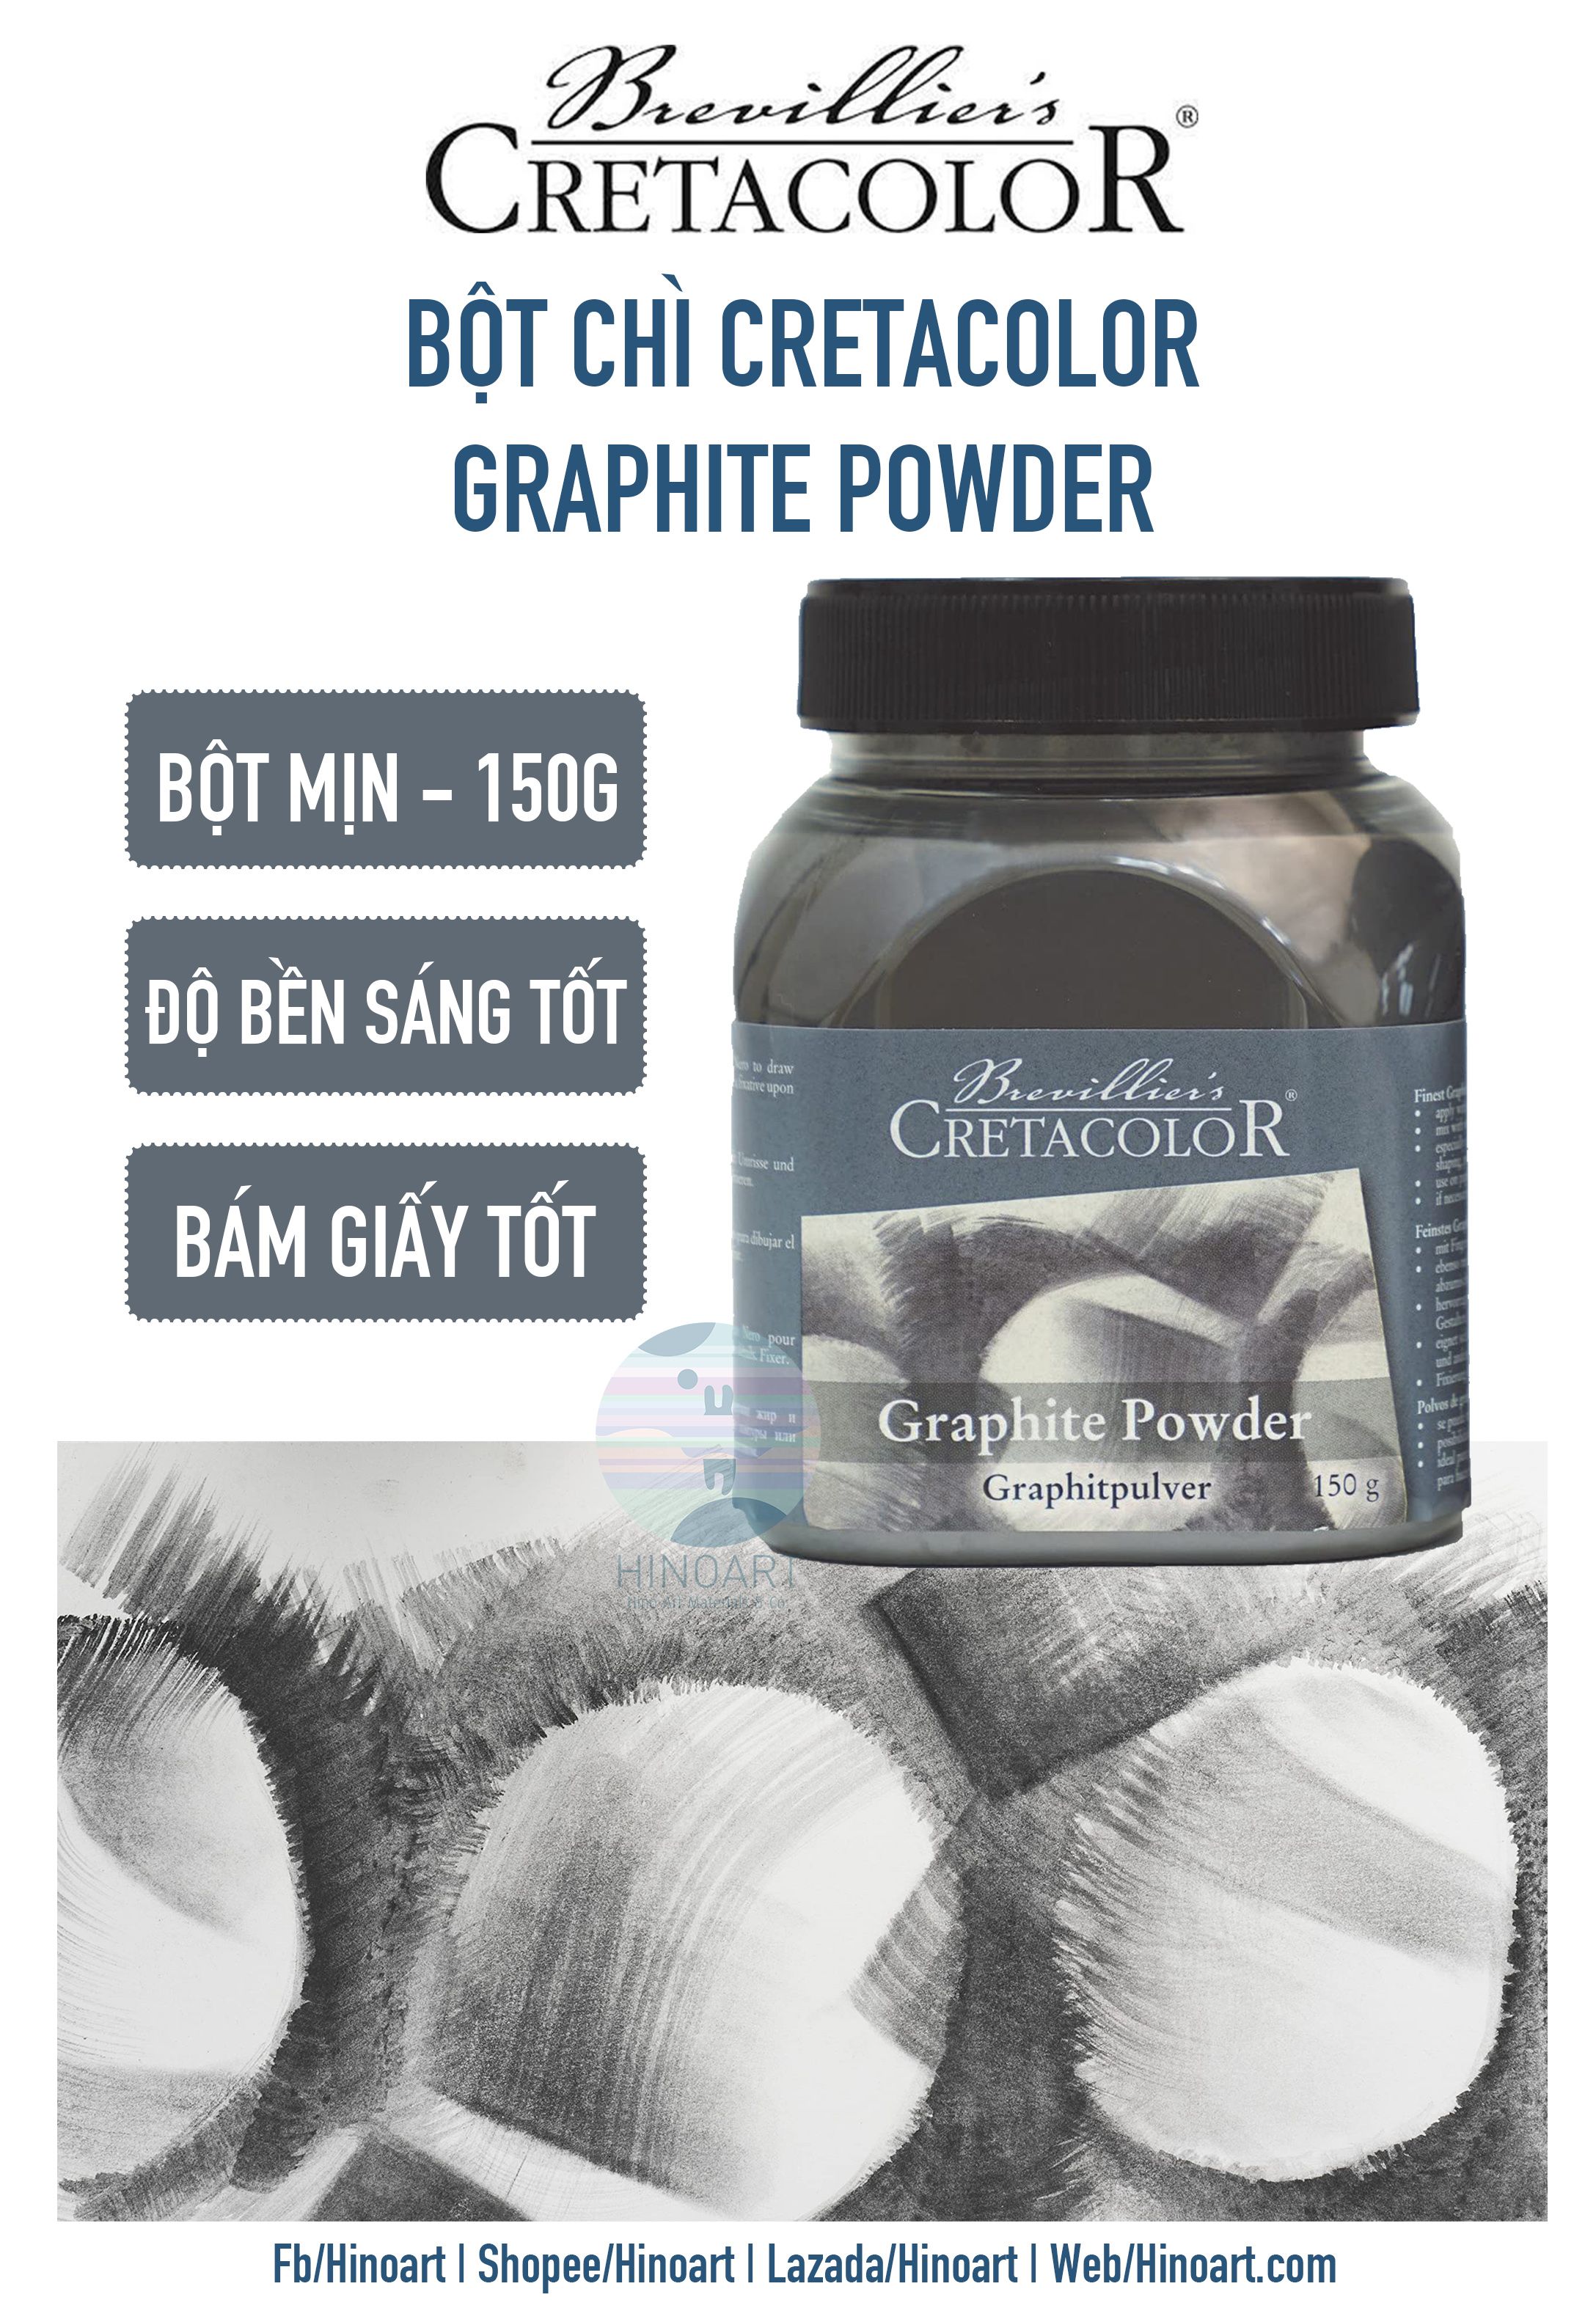 Cretacolor® Graphite Powder, 150g